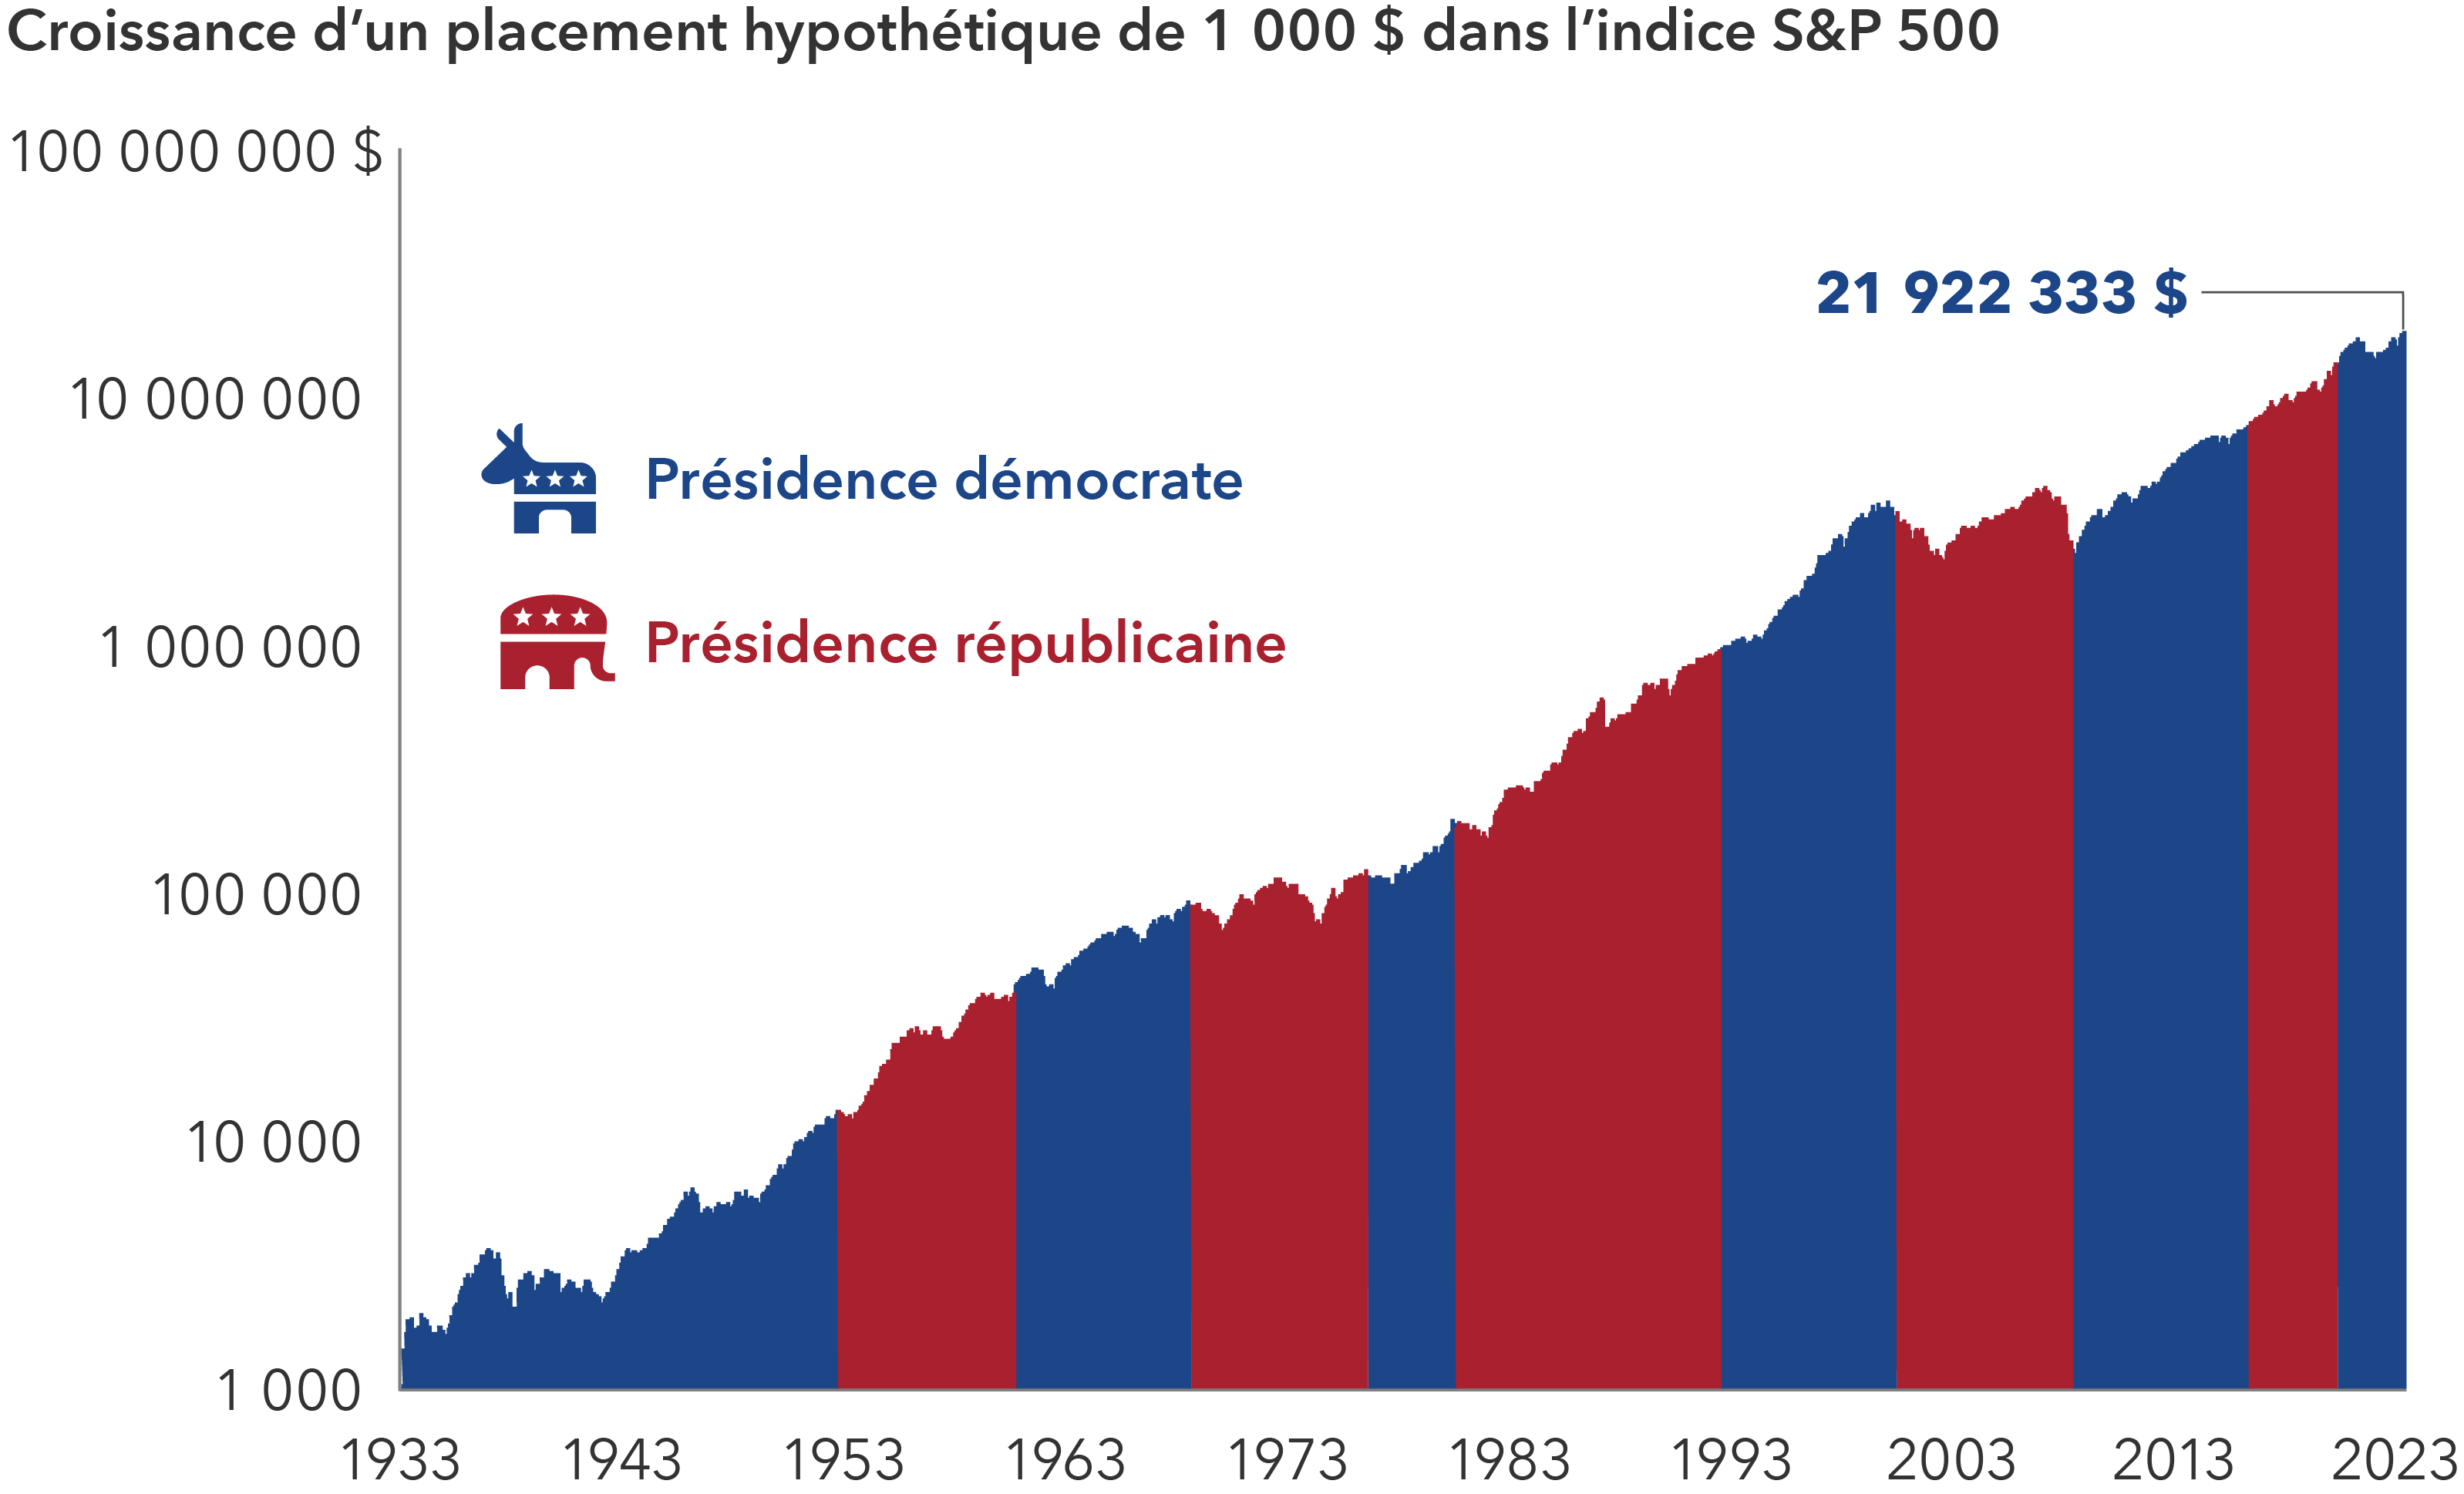 L’image présente la croissance d’un placement hypothétique de 1 000 $ US dans l’indice S&P 500 pendant les présidences démocrate et républicaine, de 1933 à 2023. Un placement de 1 000 $ US en 1933 serait passé à plus de 10 000 $ US en 1951, alors que les Démocrates occupaient la présidence, à plus de 100 000 $ US en 1973 et 1 000 000 $ US en 1991, alors que les Républicains l’occupaient, et à plus de 10 000 000 $ US en 2017, alors que les Démocrates détenaient la présidence. À la fin de l’année 2023, ce placement initial valait 21,9 M$ US. Le graphique présente le fait que les rendements boursiers ont été élevés quel que soit le parti à la tête de la Maison Blanche.